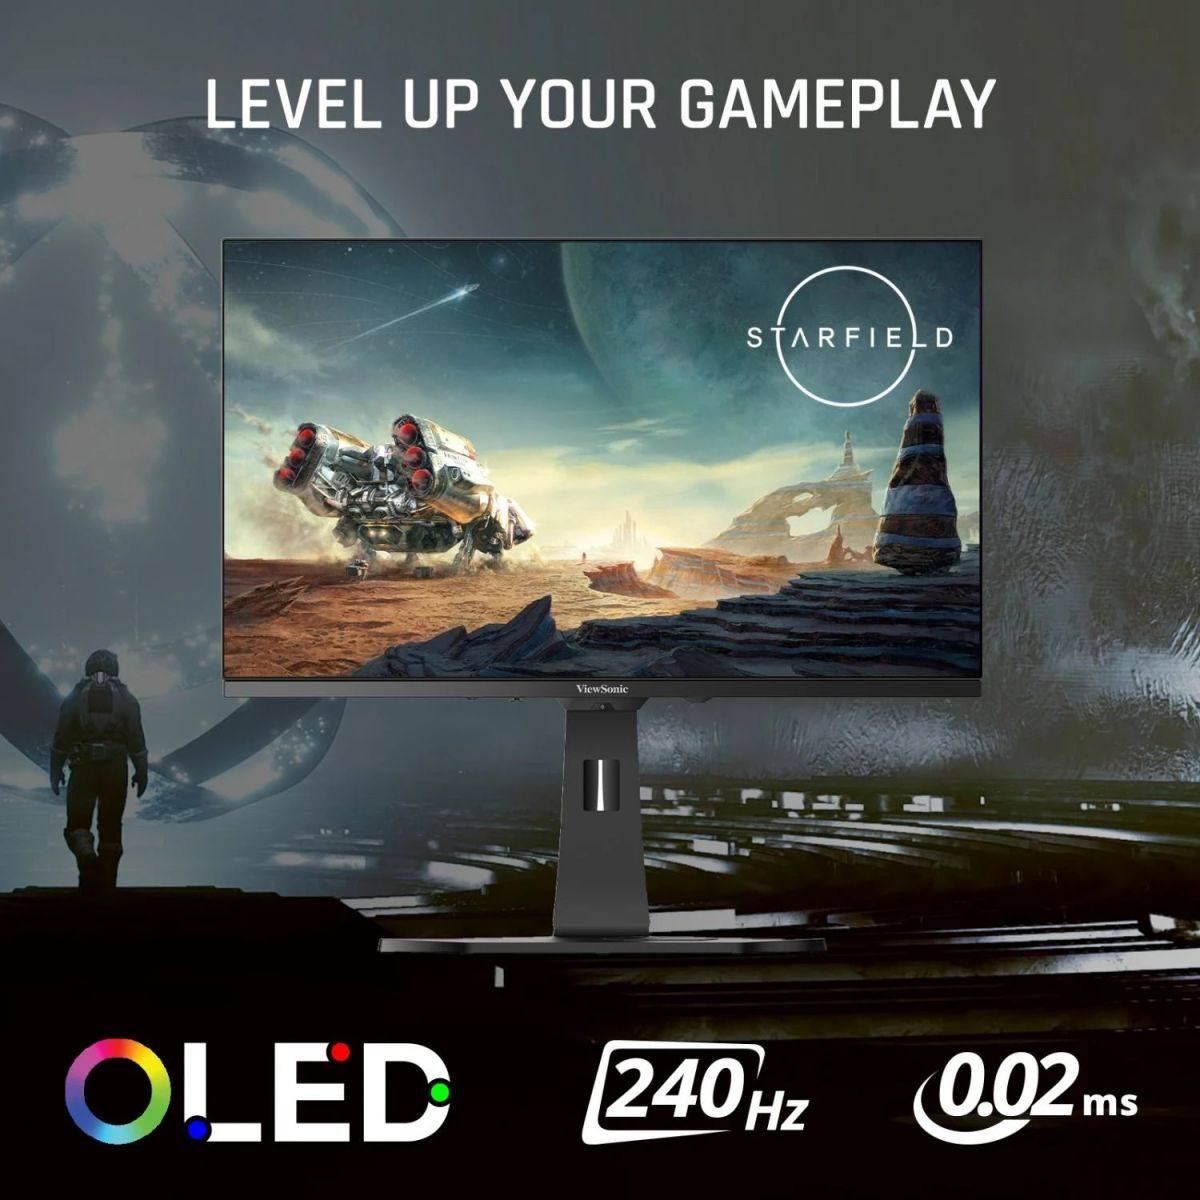 Màn hình Viewsonic XG272 2K OLED Gaming | 27" - 240Hz - RGB